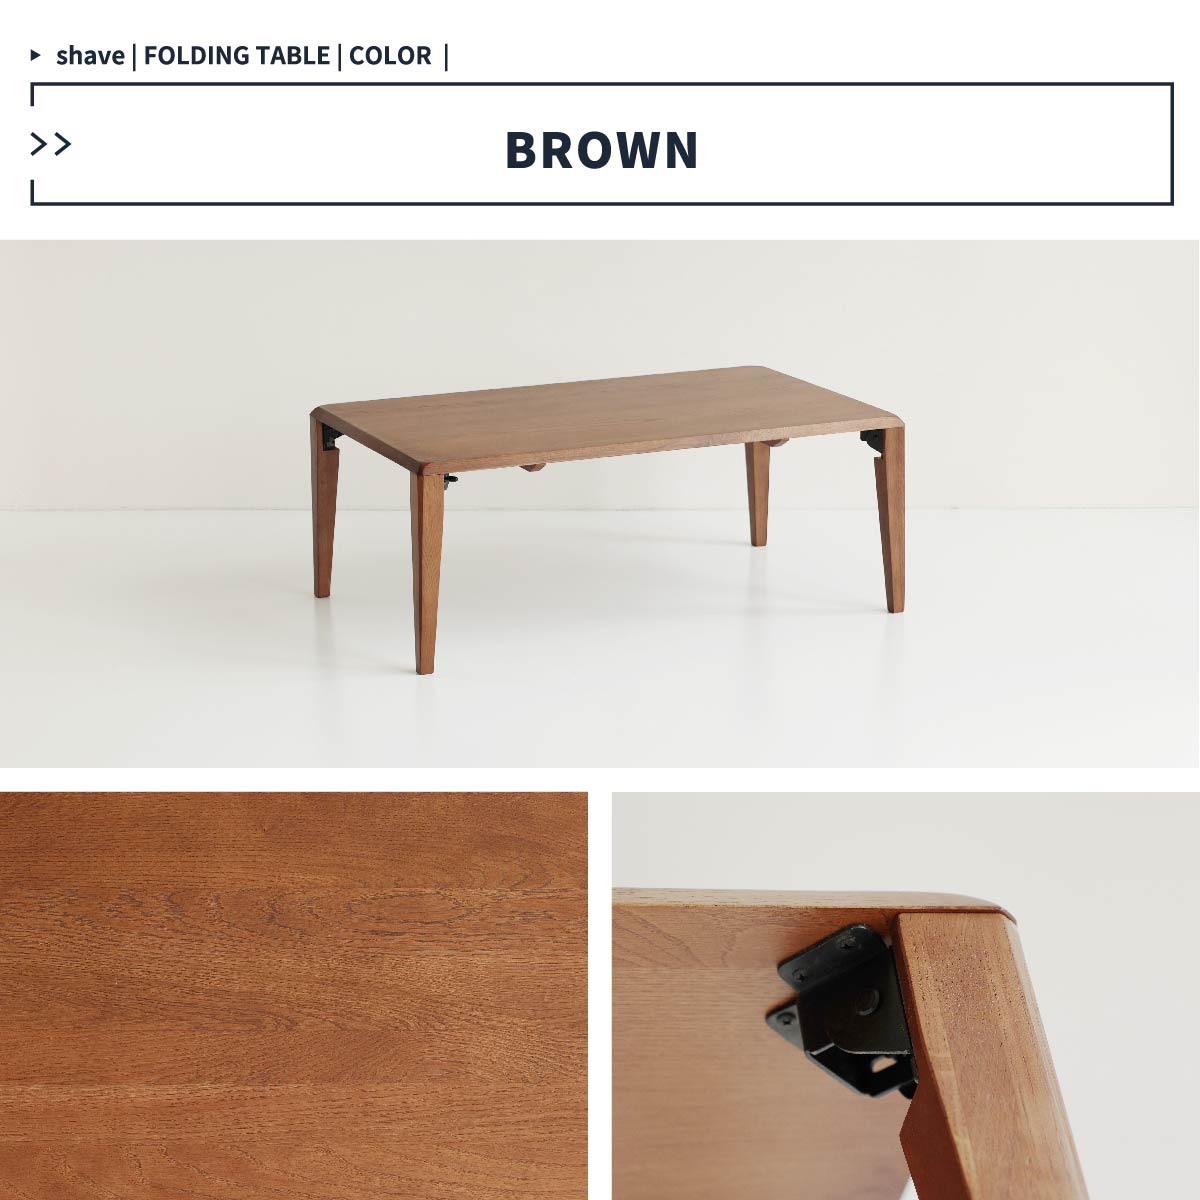 テーブル 折りたたみテーブル ローテーブル リビングテーブル 幅90 奥行55 高さ35 オーク ナチュラル ブラウン Folding Table  -shave- ILT-3650